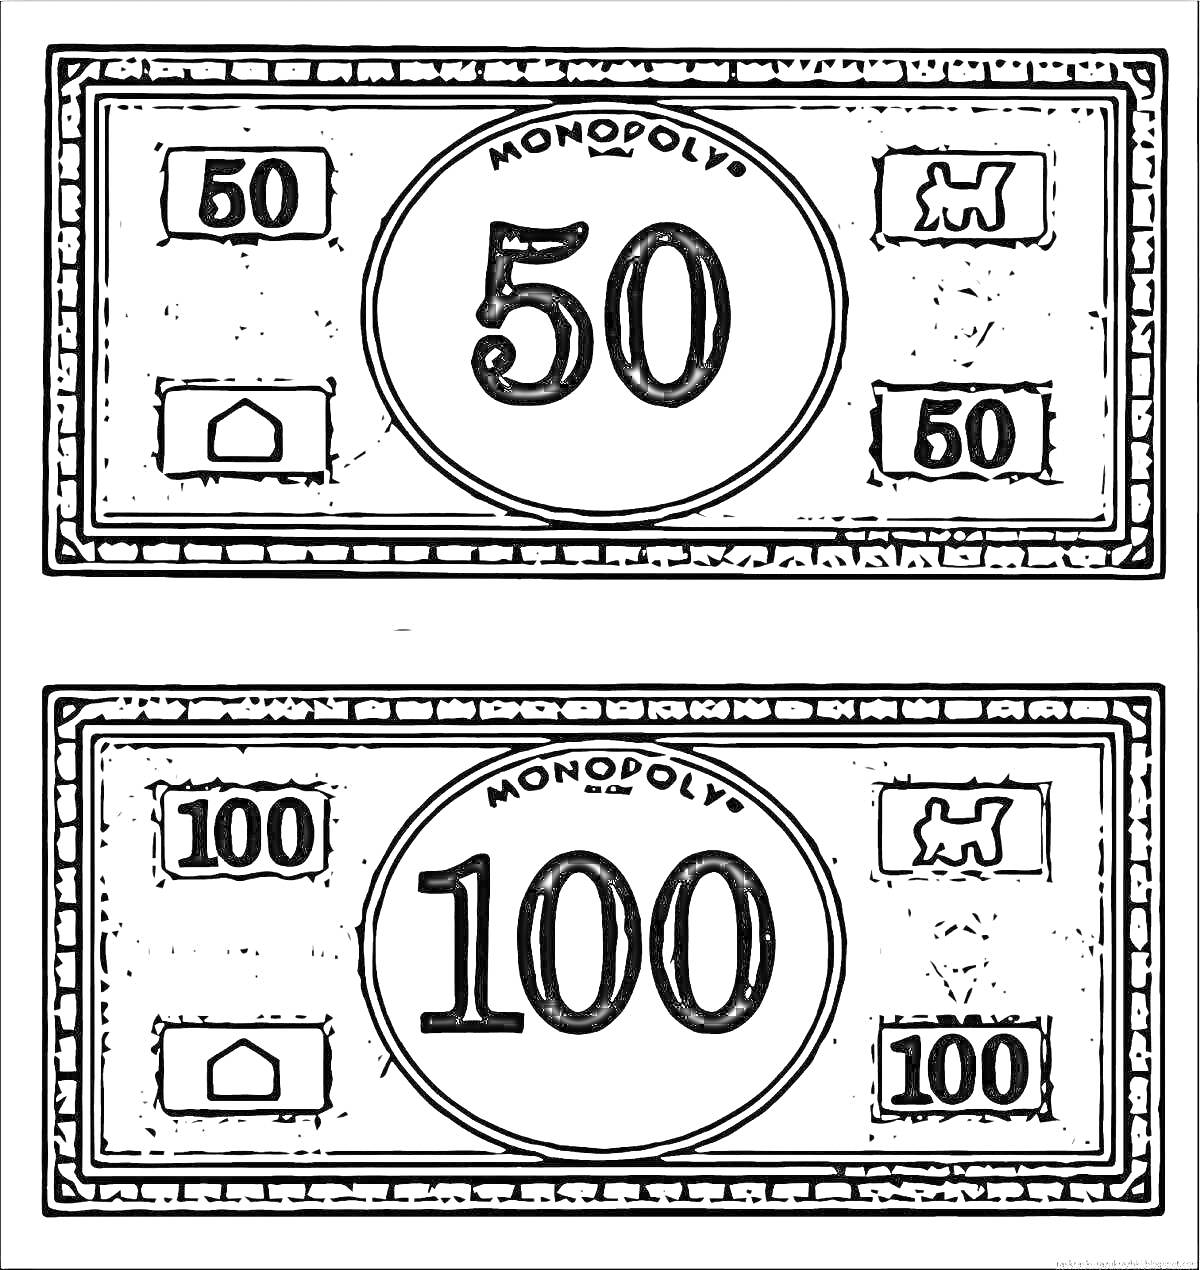 Раскраска Деньги из Монополии: банкноты 50 и 100, с изображениями дома и фигуры собаки